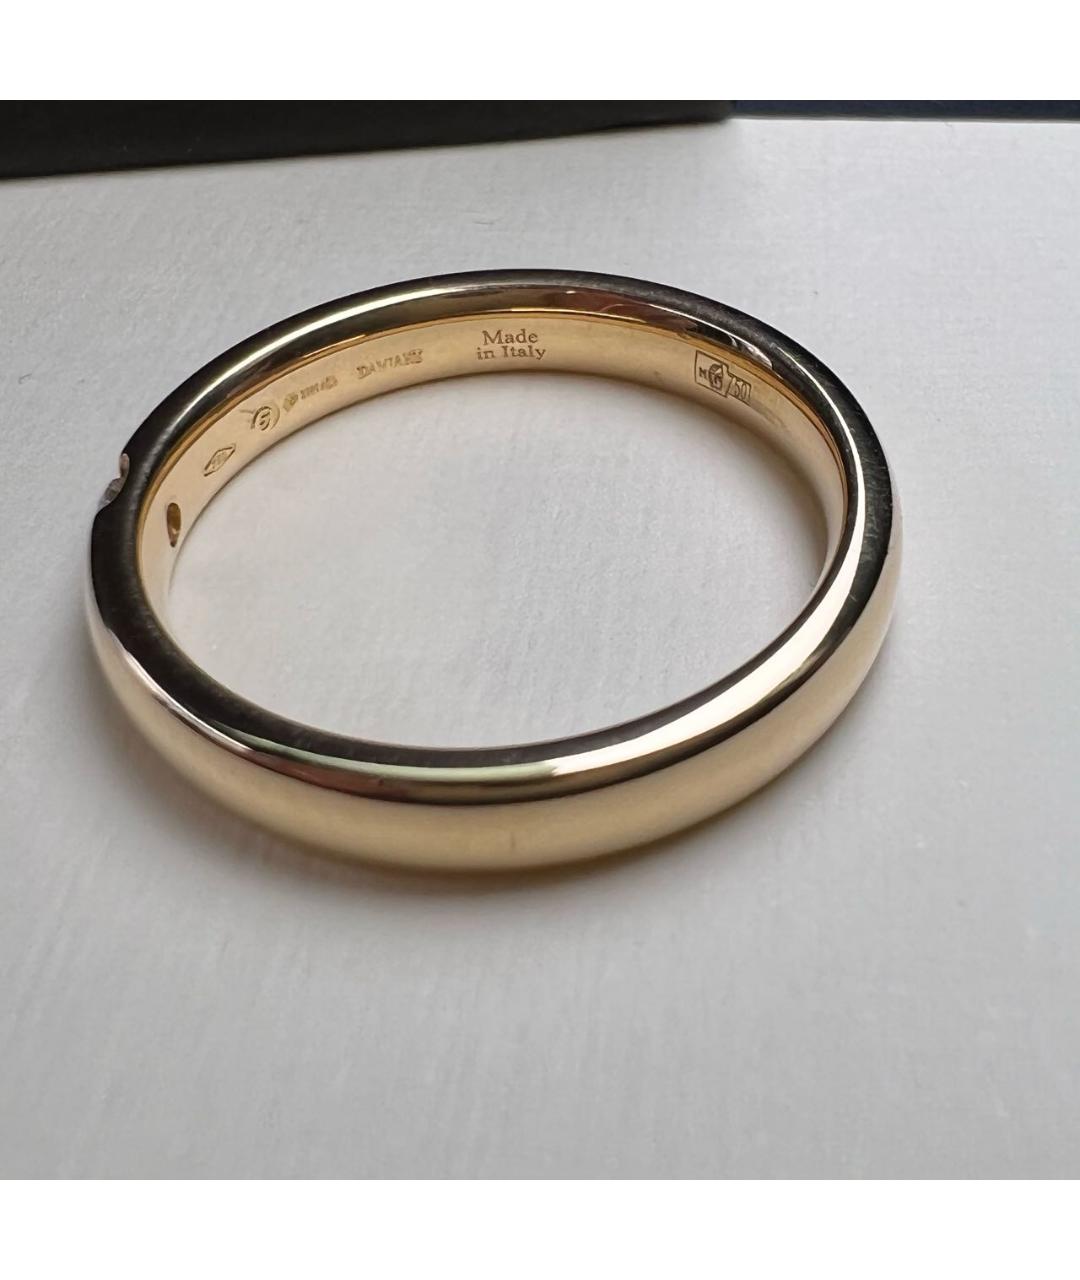 DAMIANI Золотое кольцо из желтого золота, фото 4